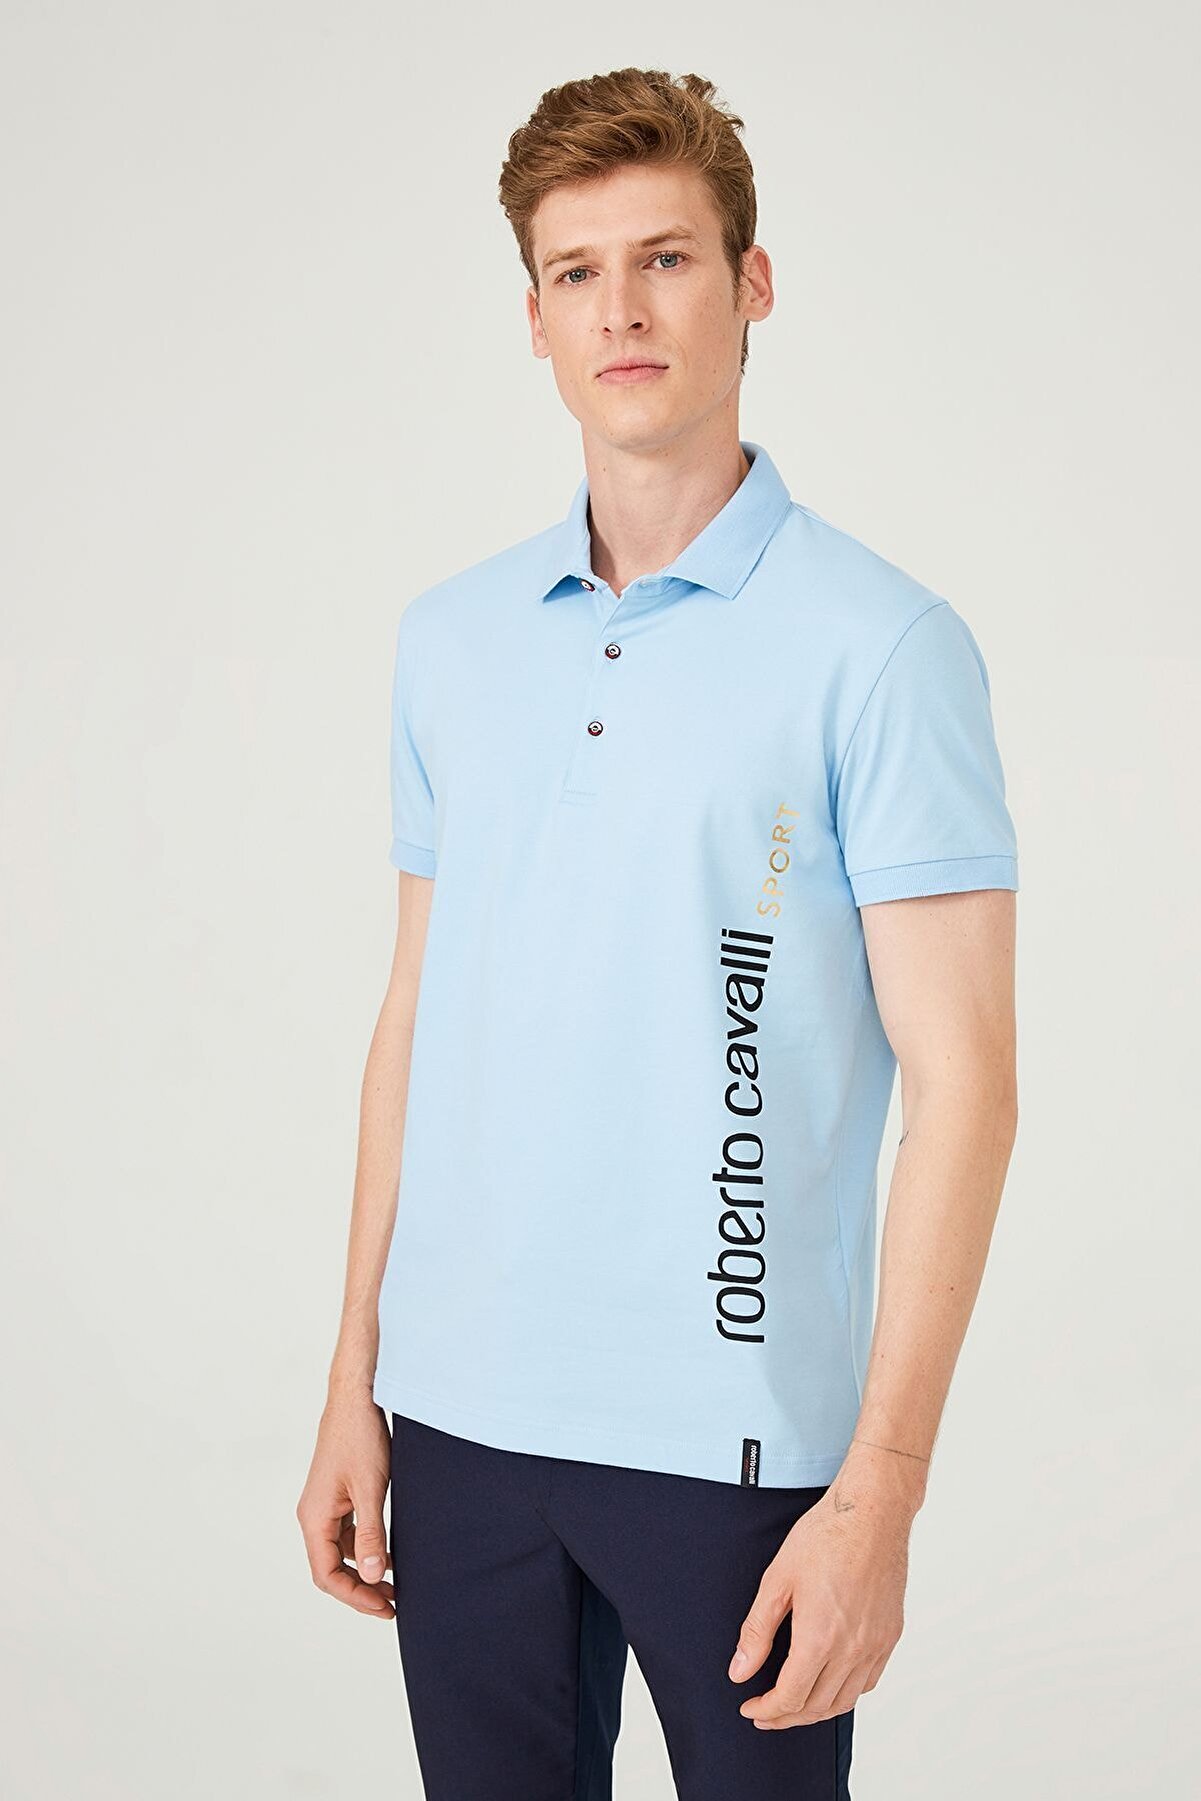 Roberto Cavalli Erkek Polo Yaka T-shirt